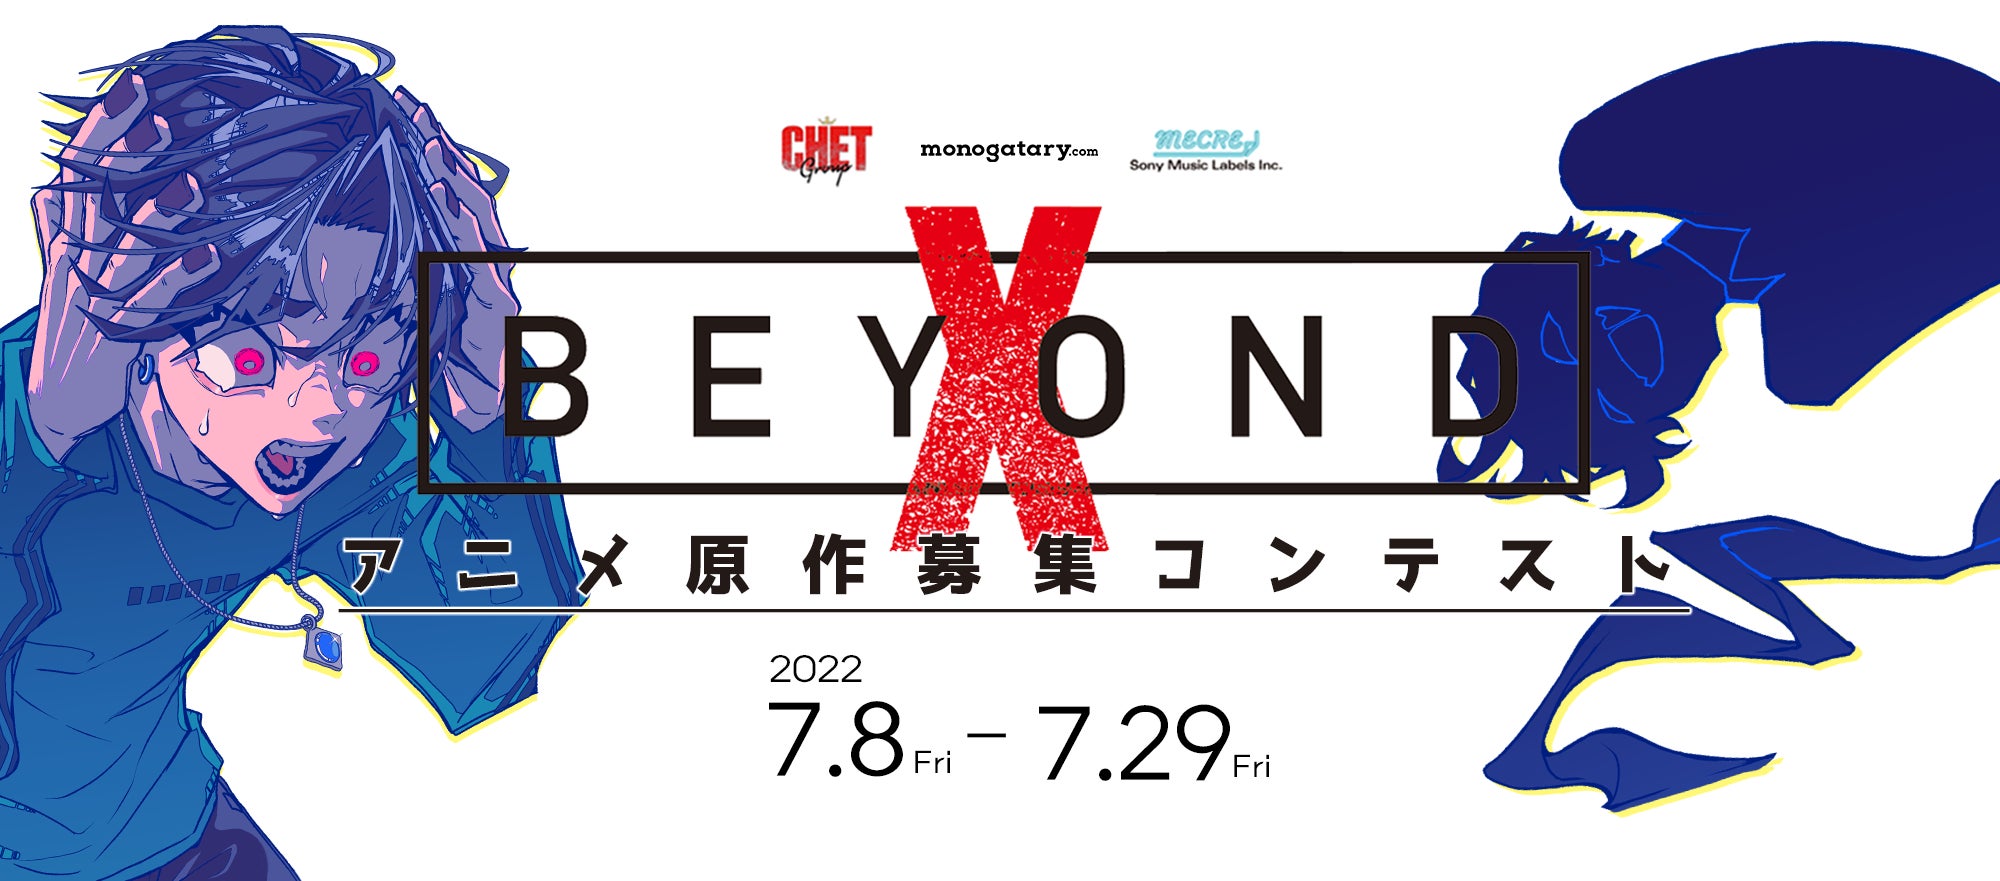 ソニーミュージックとCHET Groupの共同プロジェクトX BeyondのTVアニメの原案がをmonogatary.comにて本日募集開始！